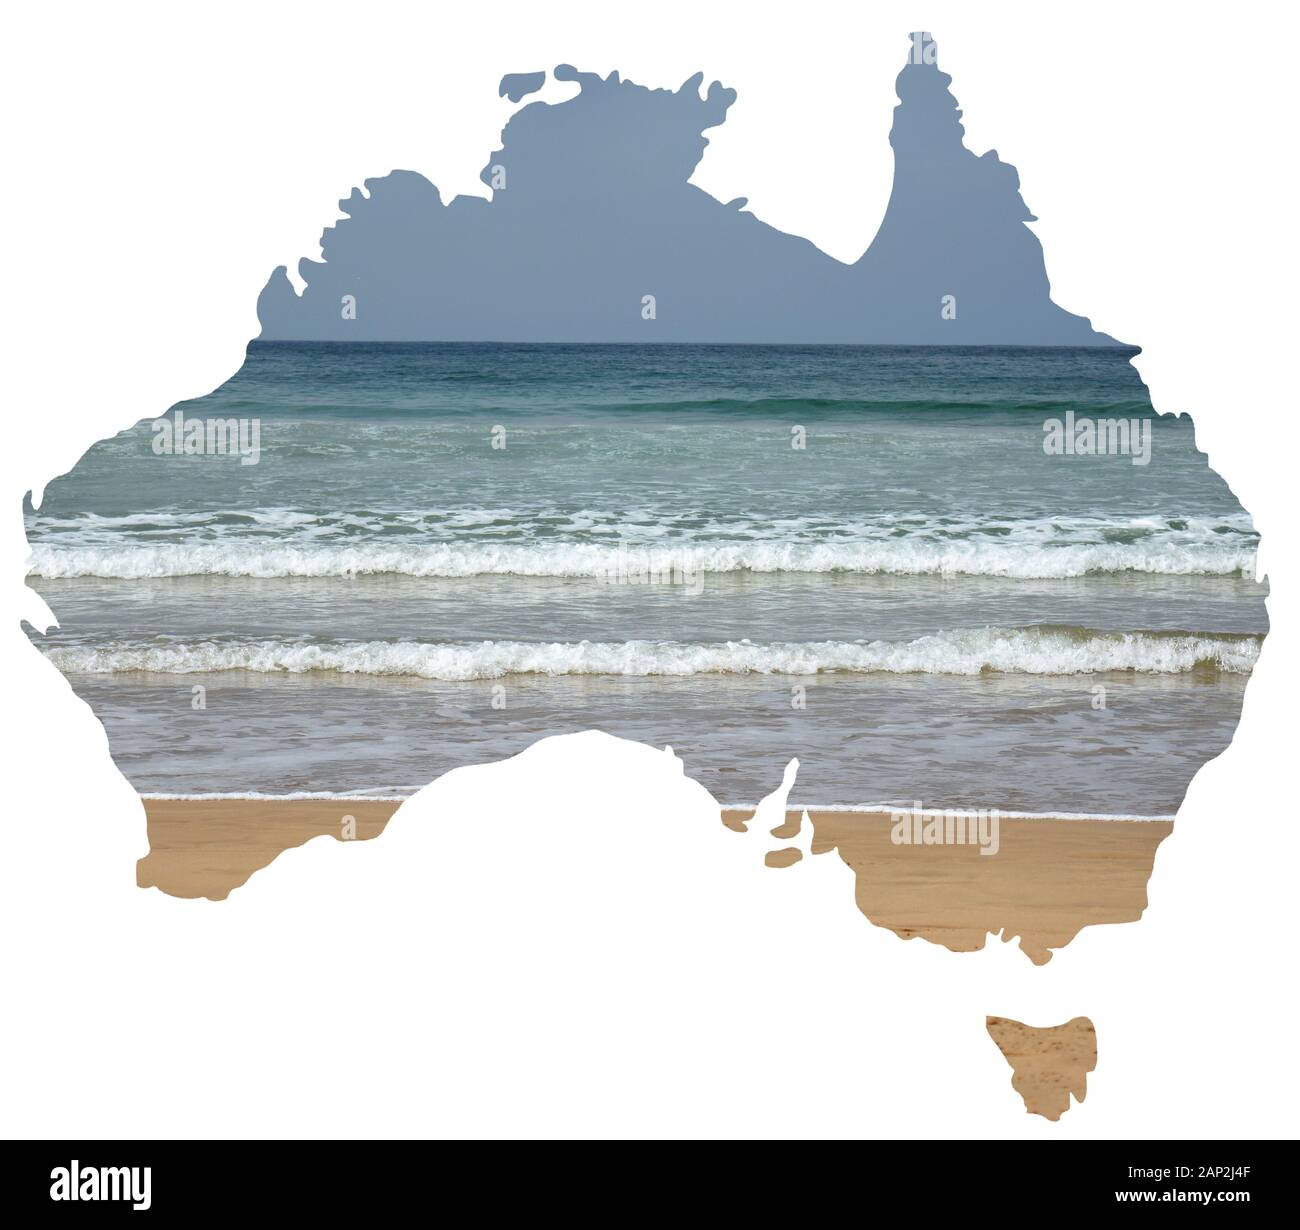 Una serie di vedute dei paesaggi naturali e dei paesaggi dell'Australia si sono stabiliti in una mappa del paese Foto Stock